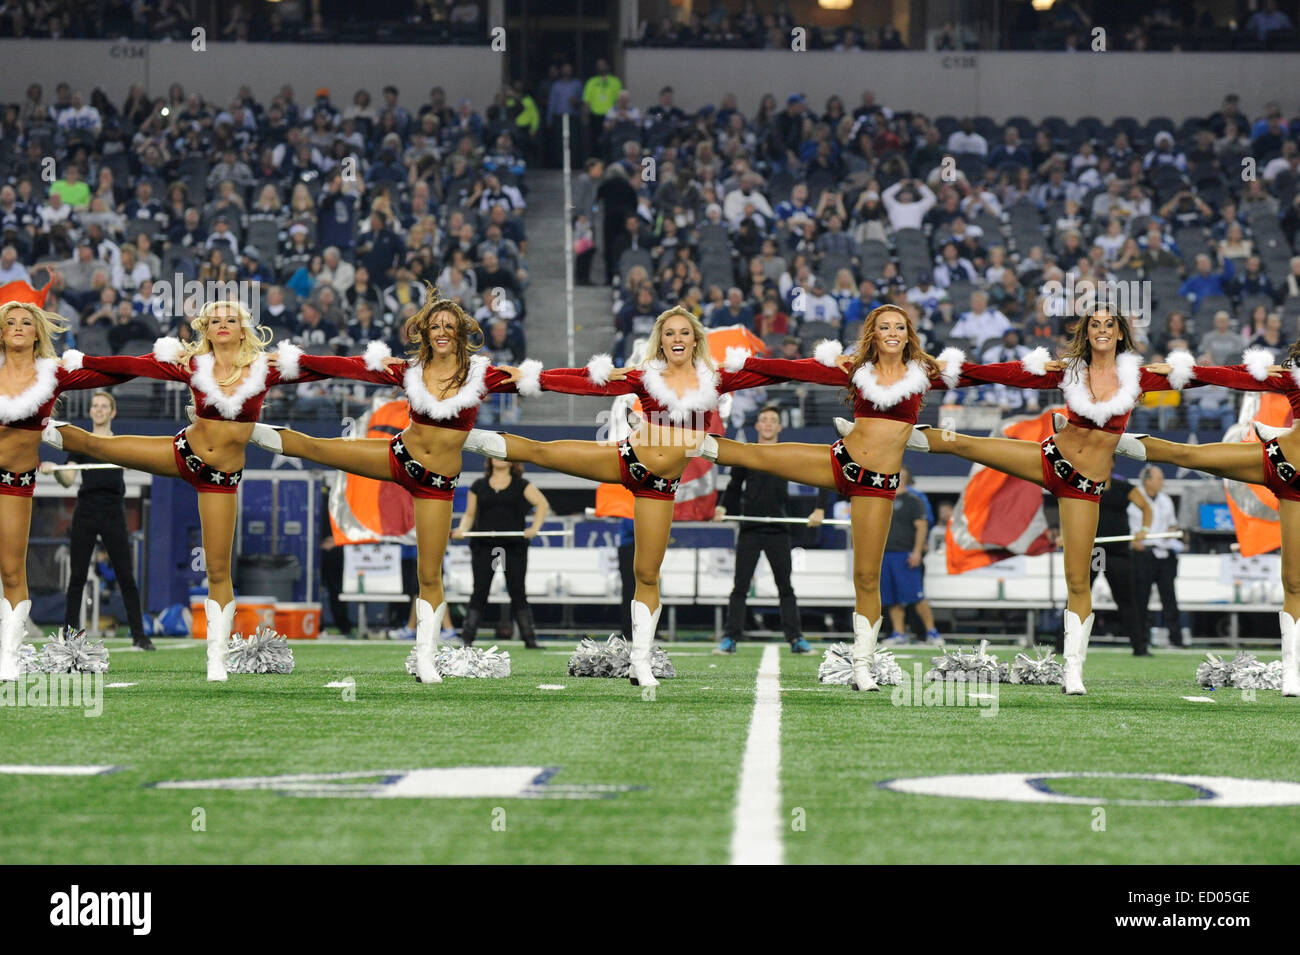 Diciembre 21, 2014: los Dallas Cowboys Cheerleaders realice durante un juego de fútbol americano de la NFL entre los Indianapolis Colts y los Dallas Cowboys en AT&T Stadium en Arlington, TX, Dallas derrotó a Indianapolis 42-7 para alzarse con el campeonato de la NFC East Foto de stock